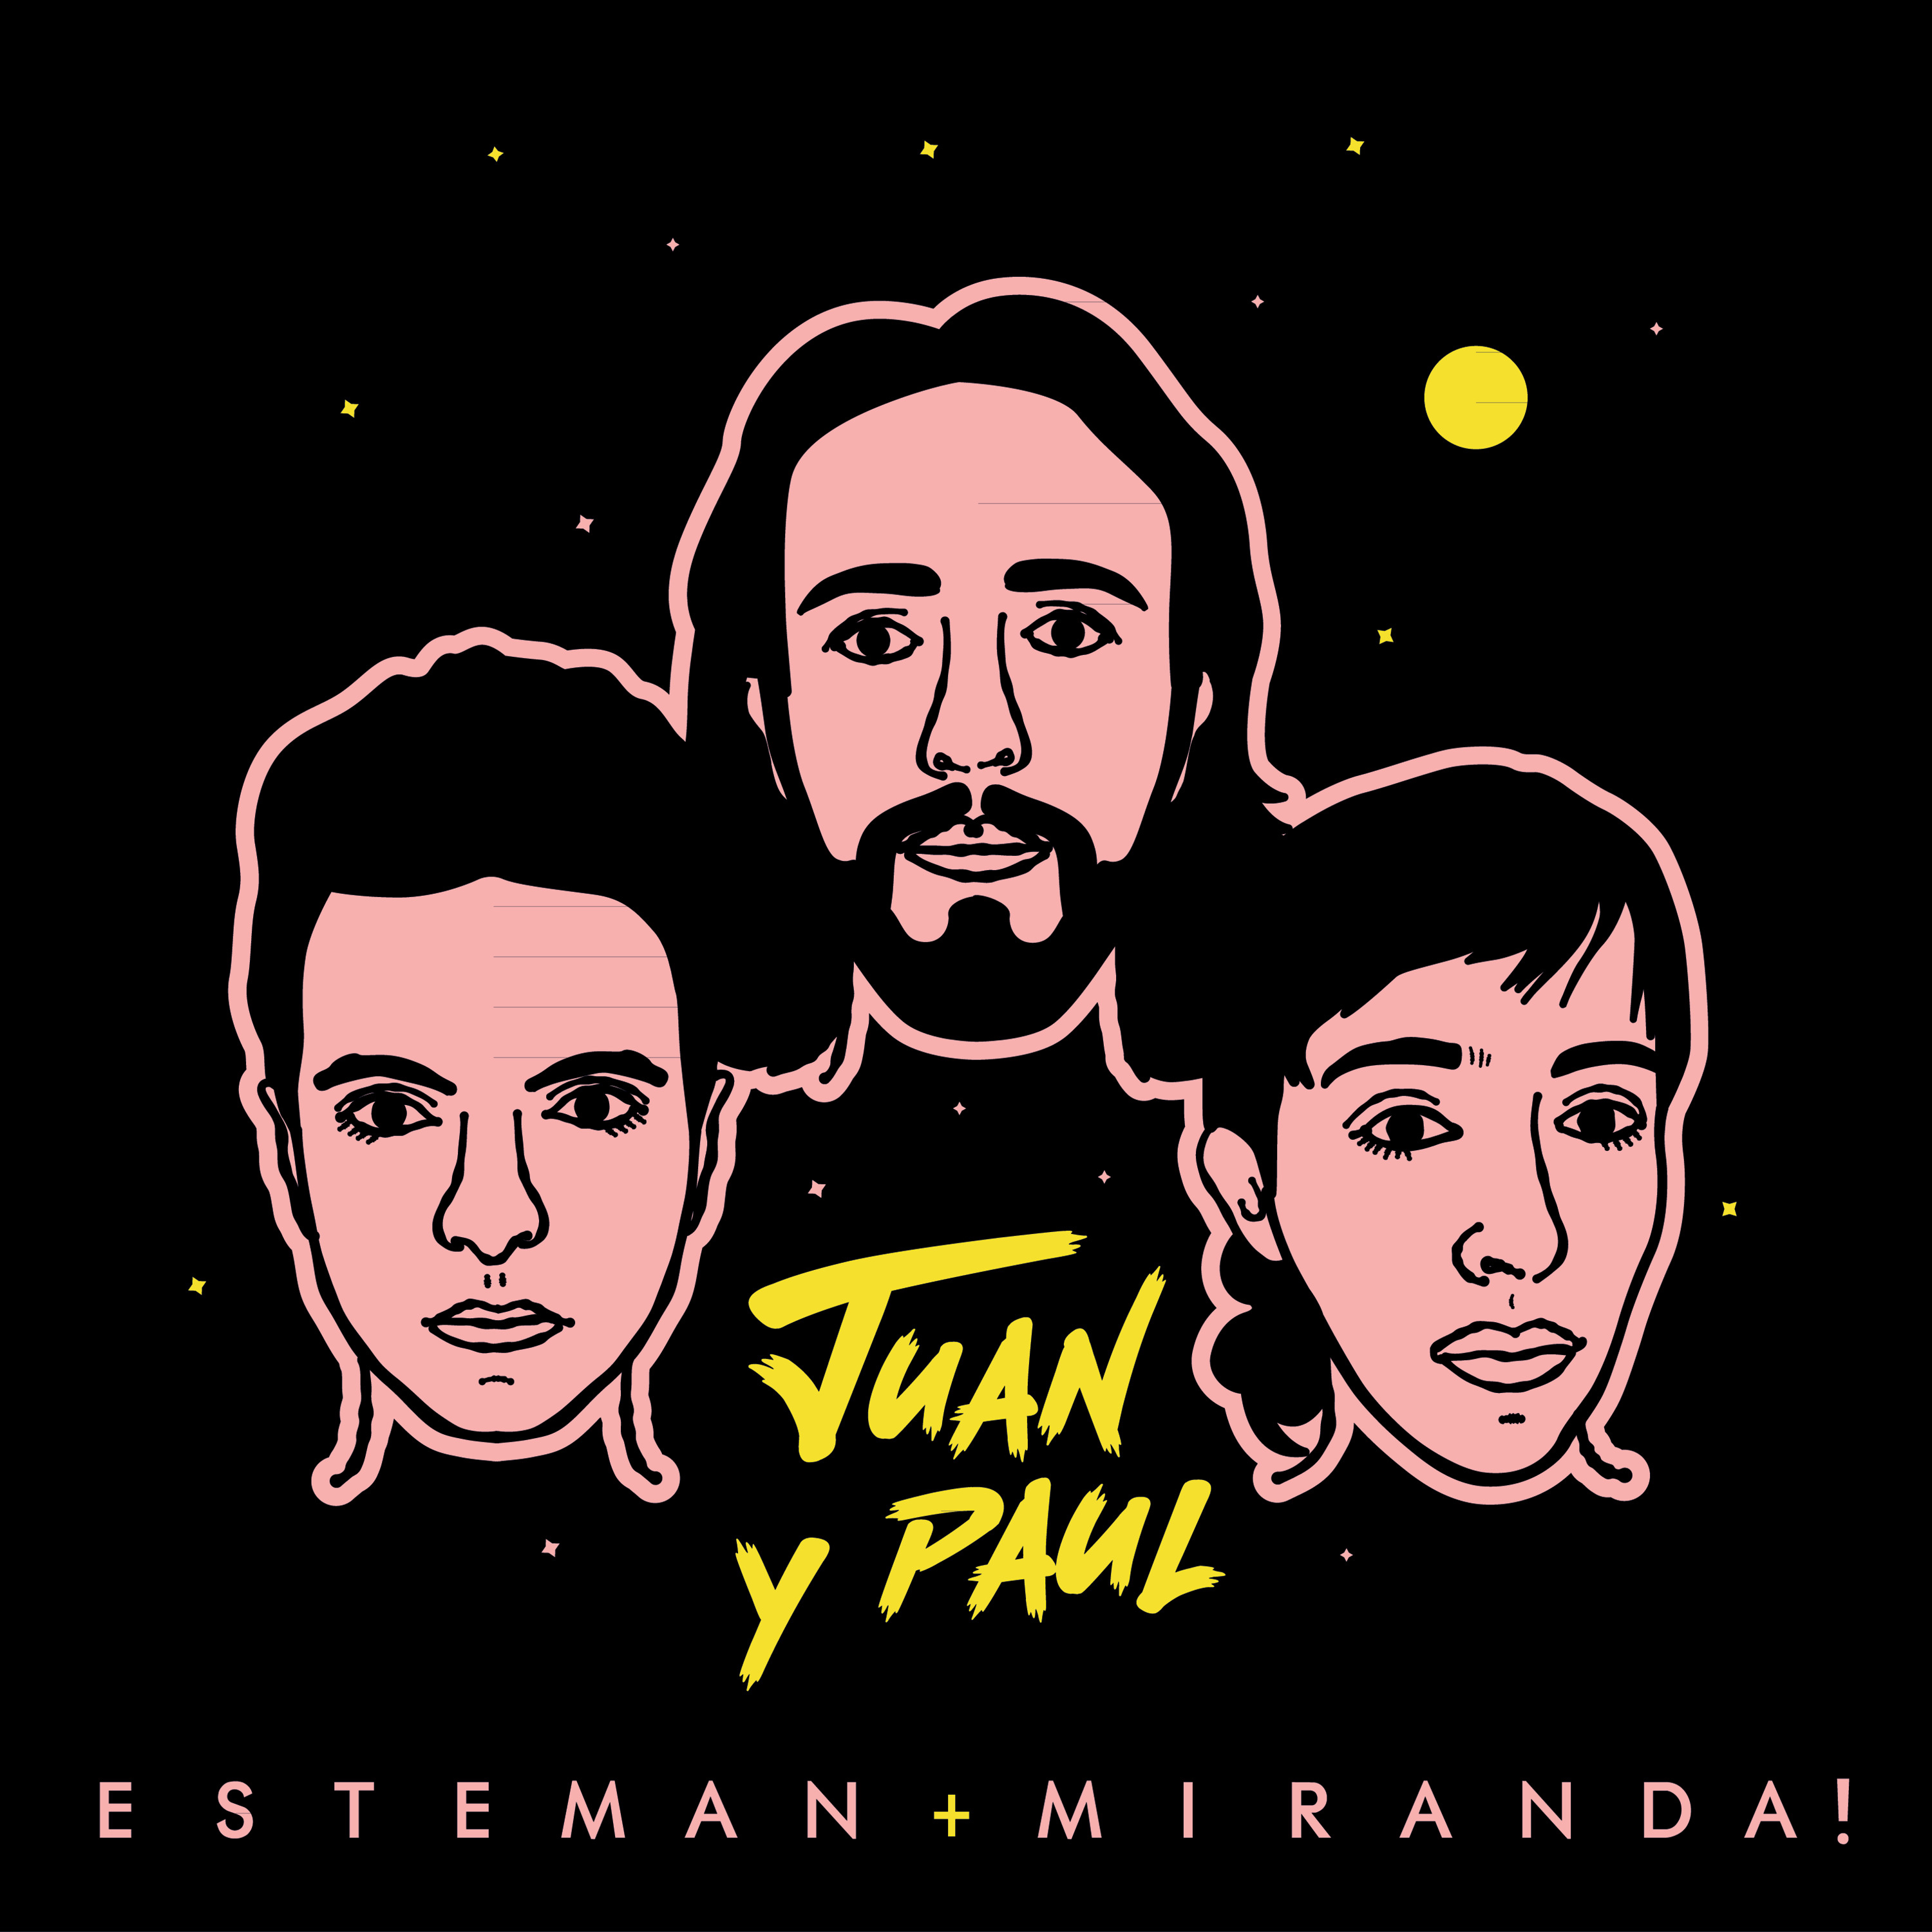 Esteman & Miranda! Juan y Paul cover artwork